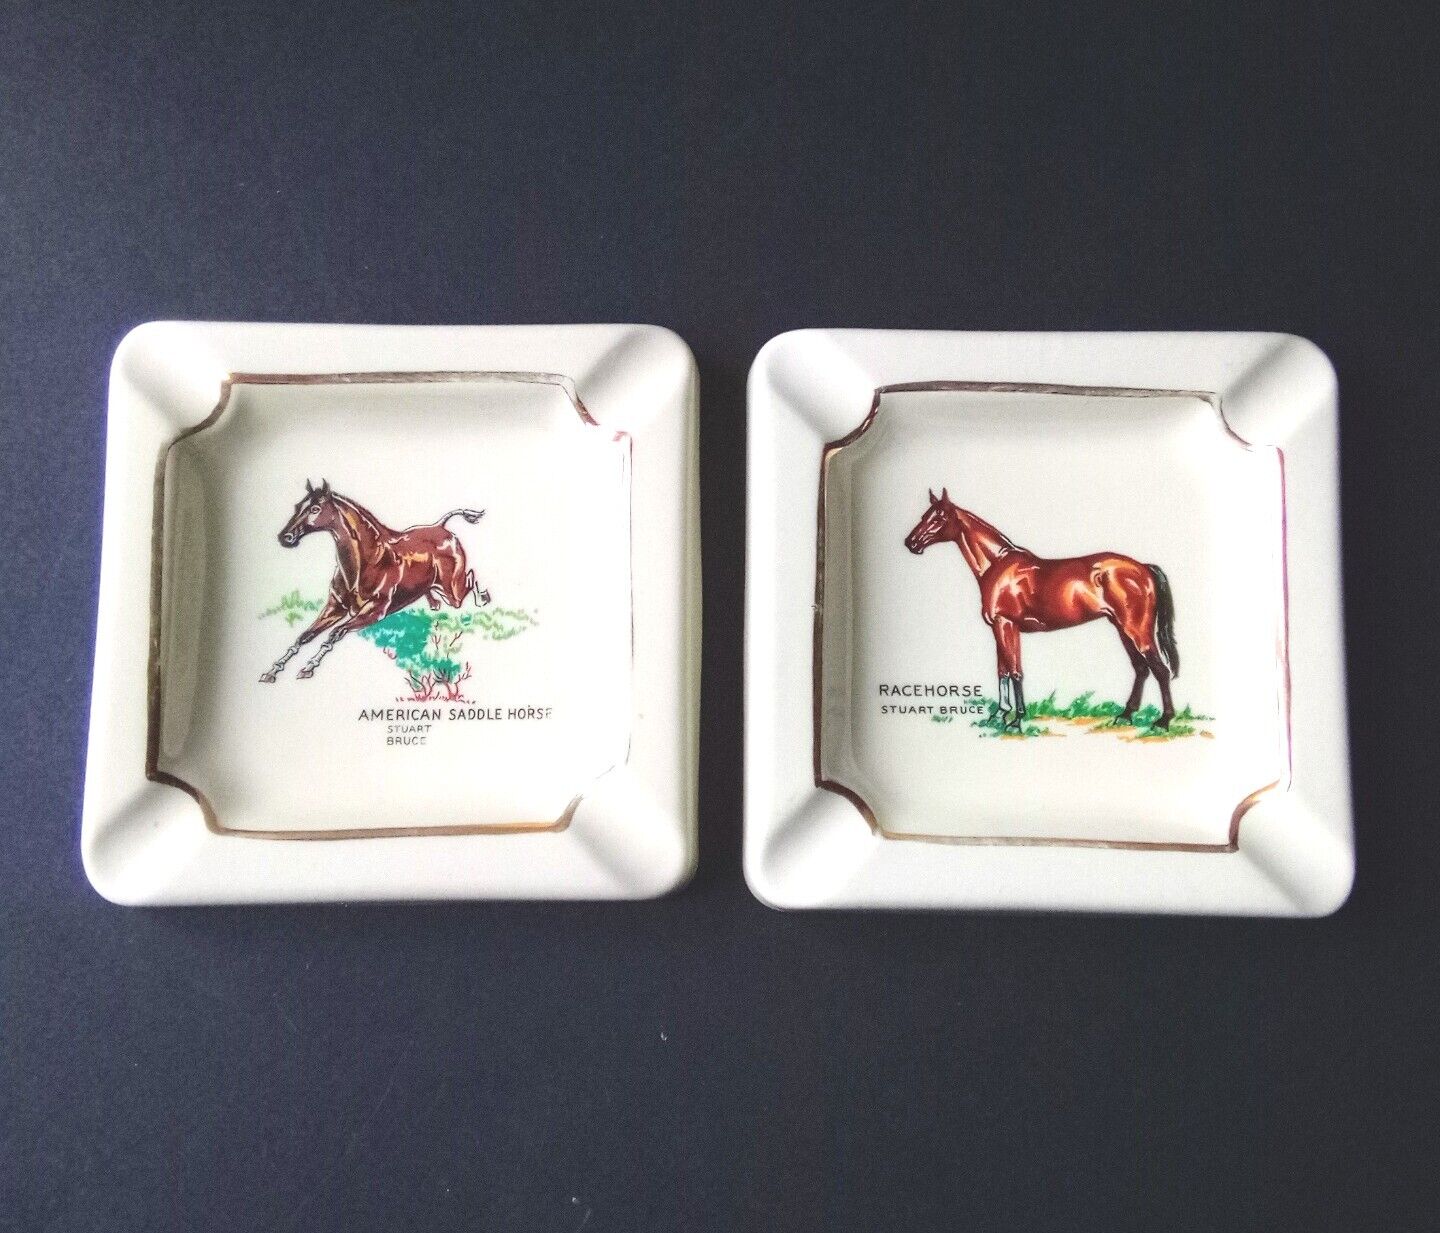 Vintage Stuart Bruce Racehorse and American Saddle Horse Porcelain Ashtrays.